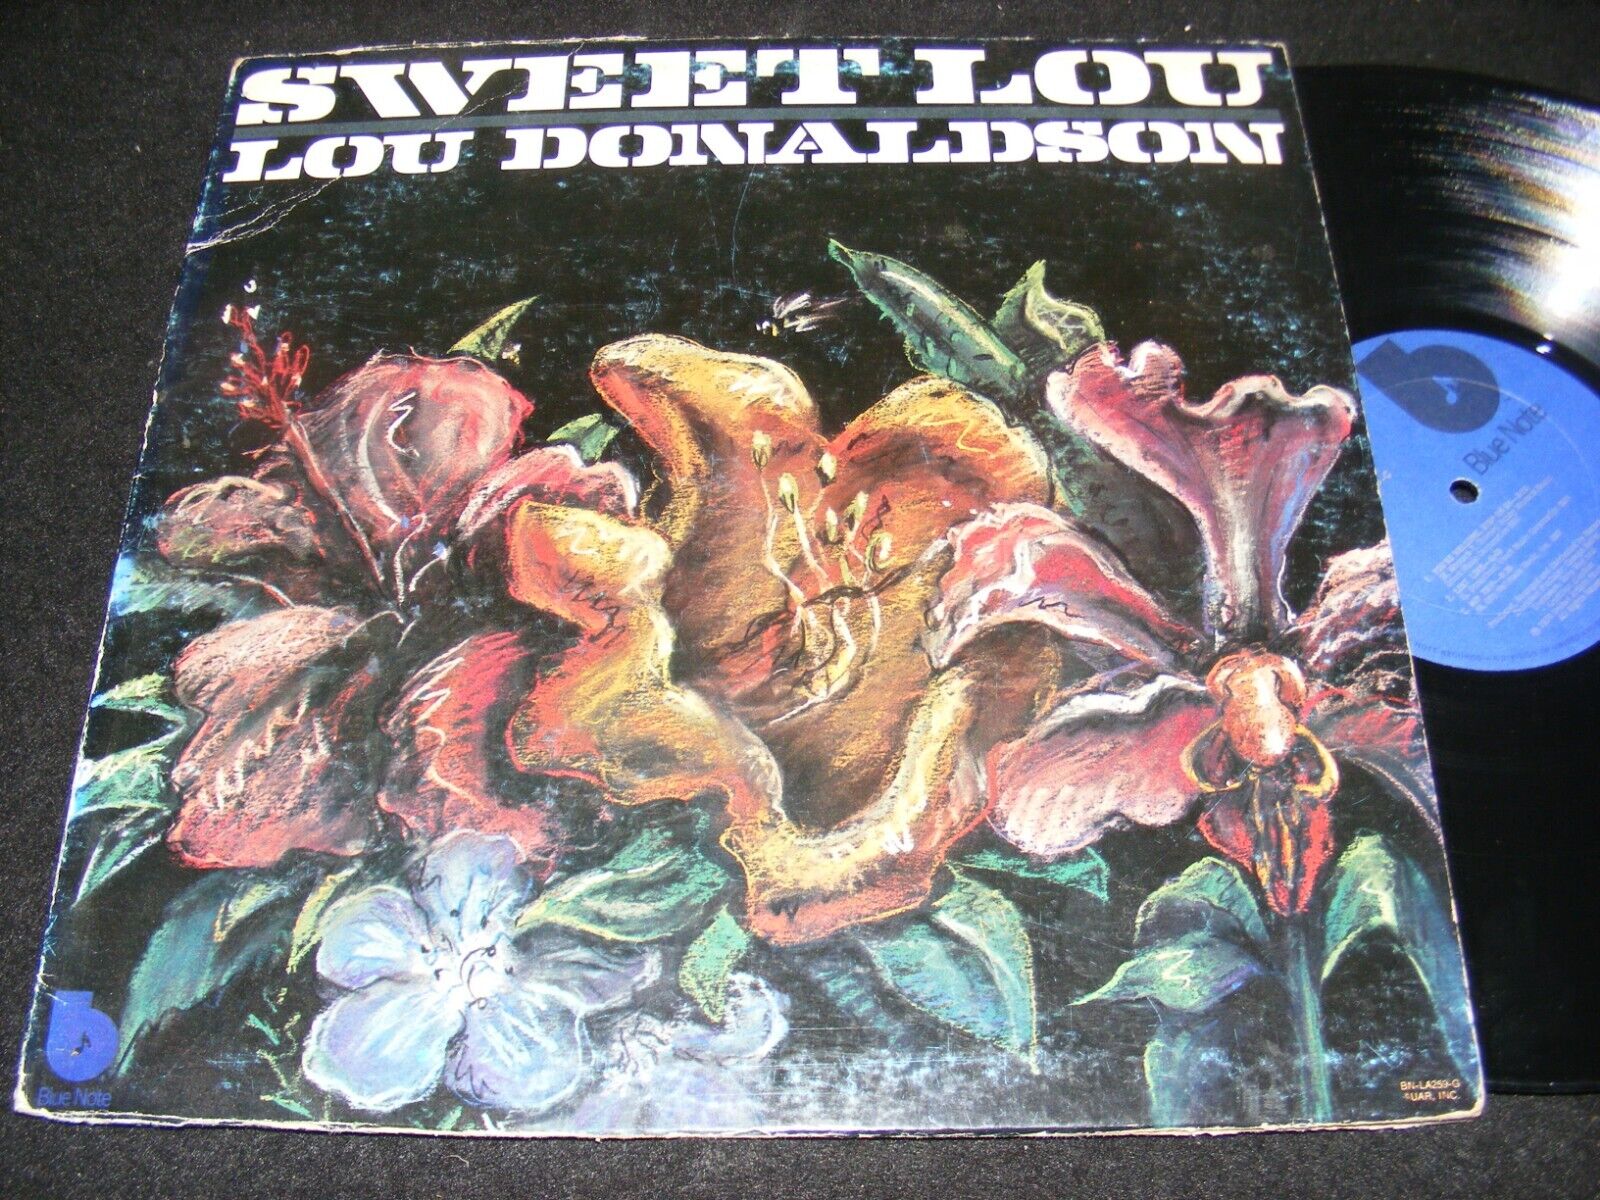 LOU DONALDSON Blue Note LP Blue Labels SWEET LOU Moody Soul Jazz Classic 1974